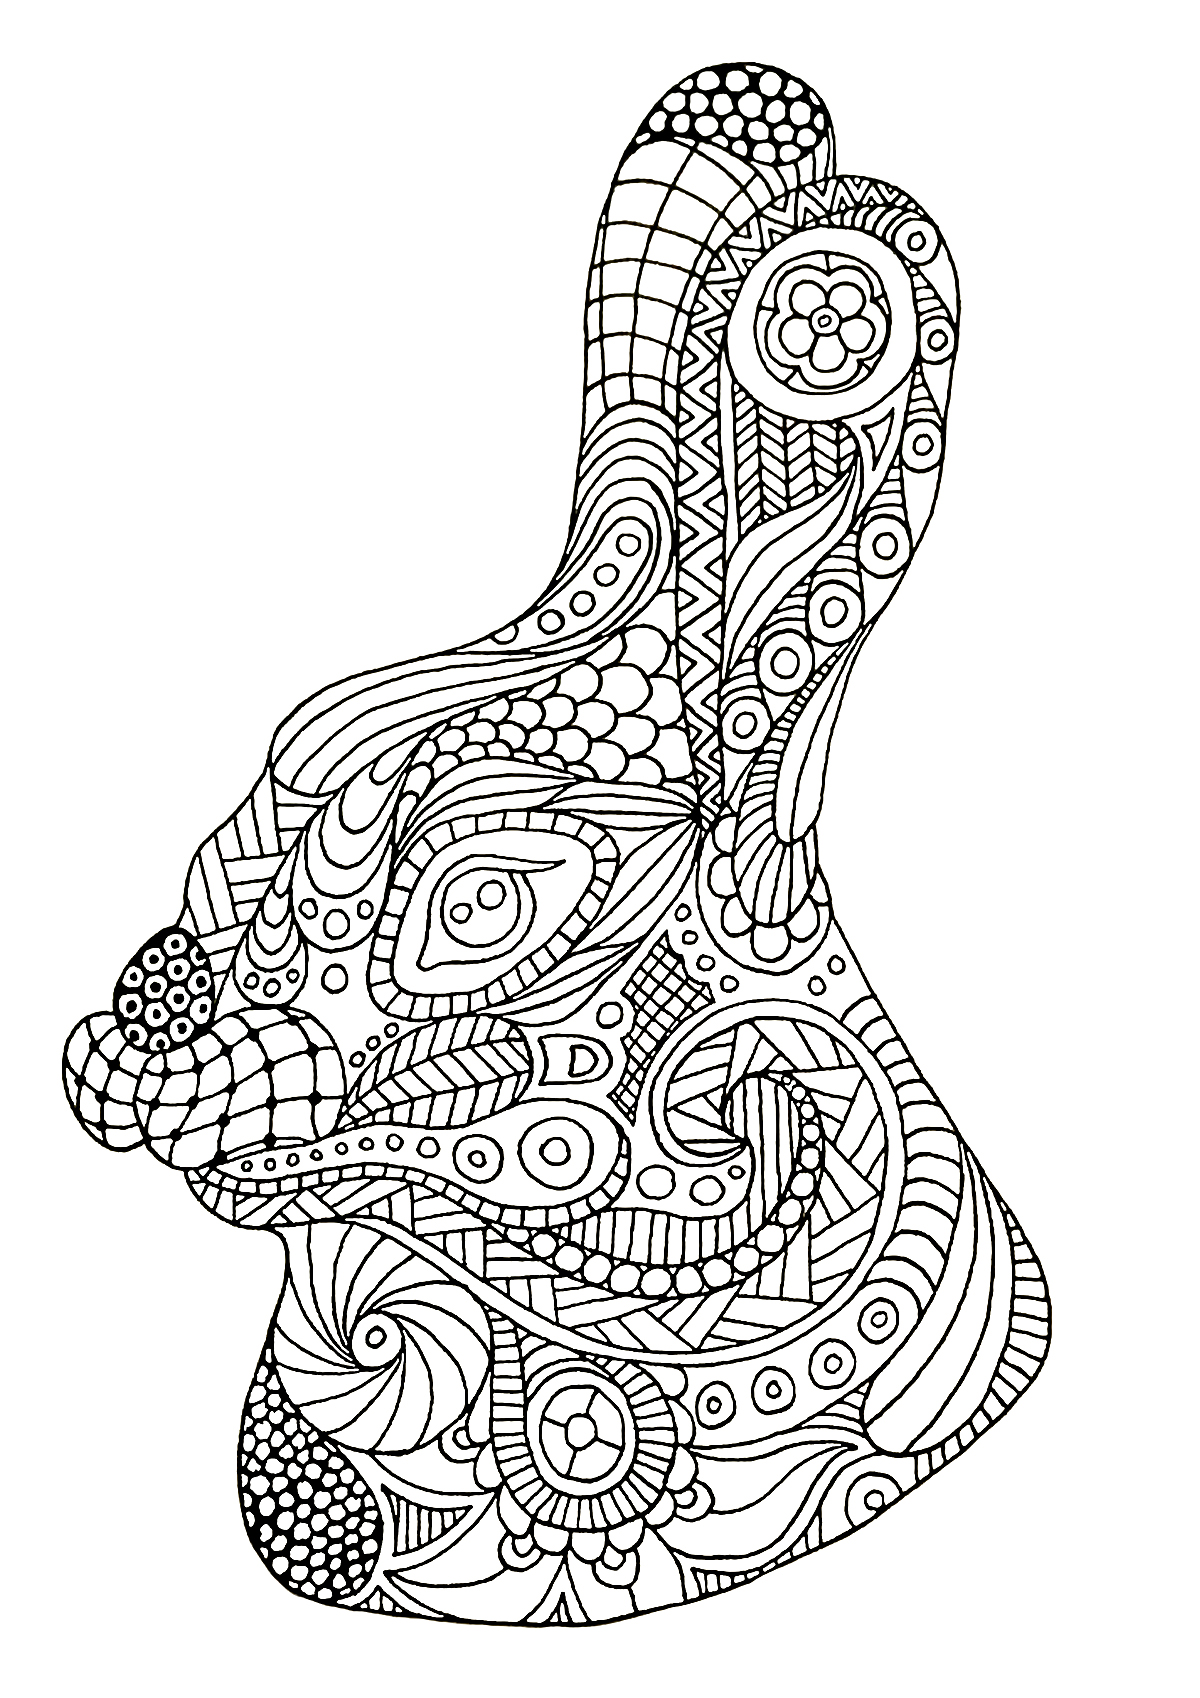 Kaninchenkopf im Zentangle-Stil gezeichnet